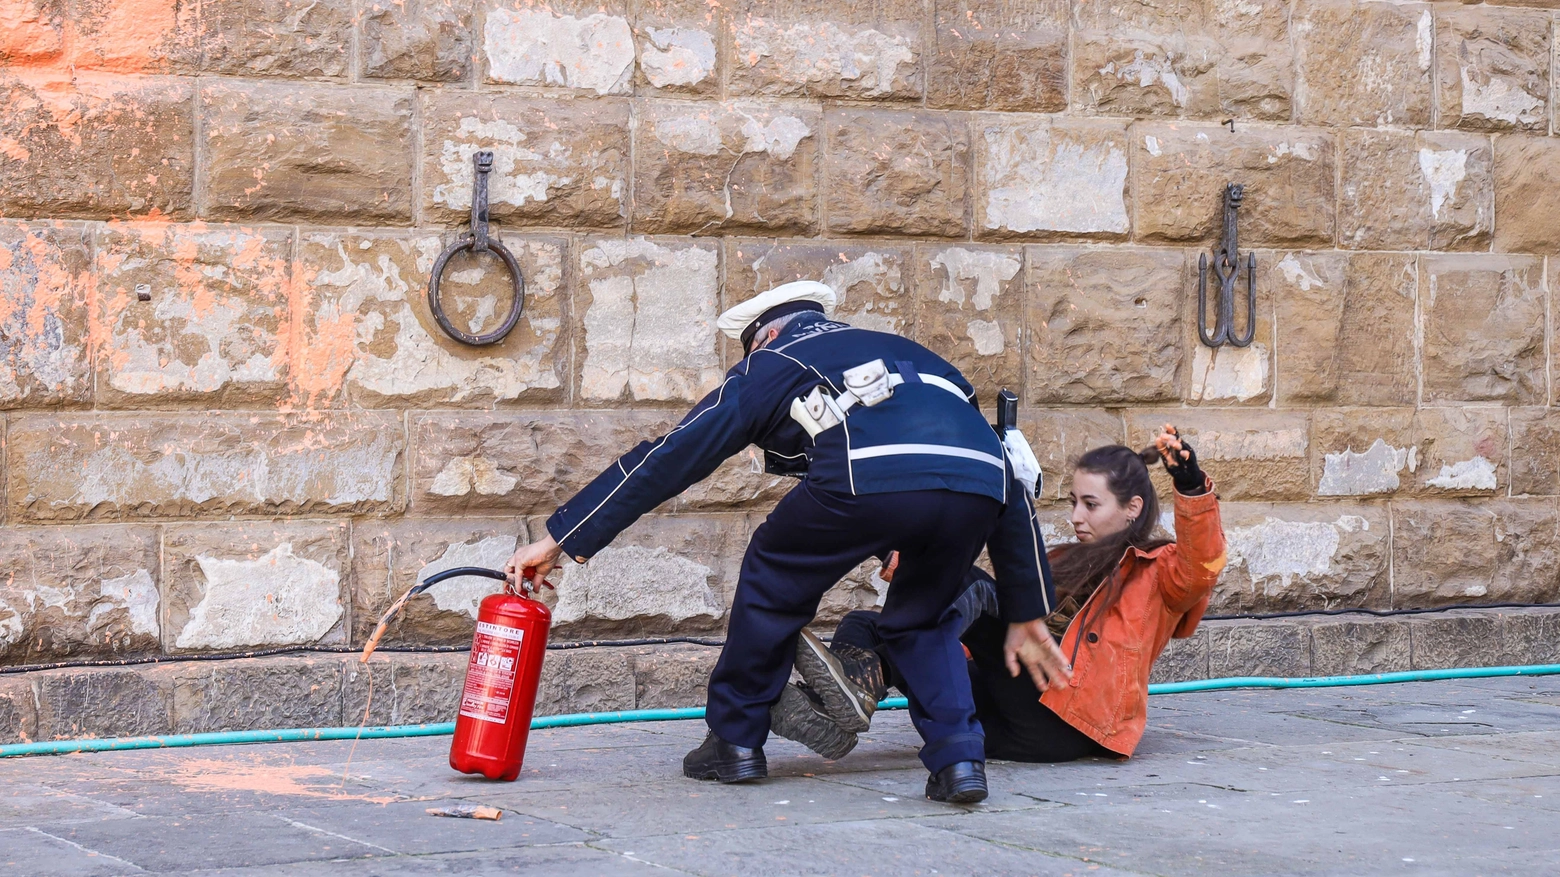 Una dei due attivisti-vandali durante lo scempio a Palazzo Vecchio (foto Giuseppe Cabras/New Press Photo)